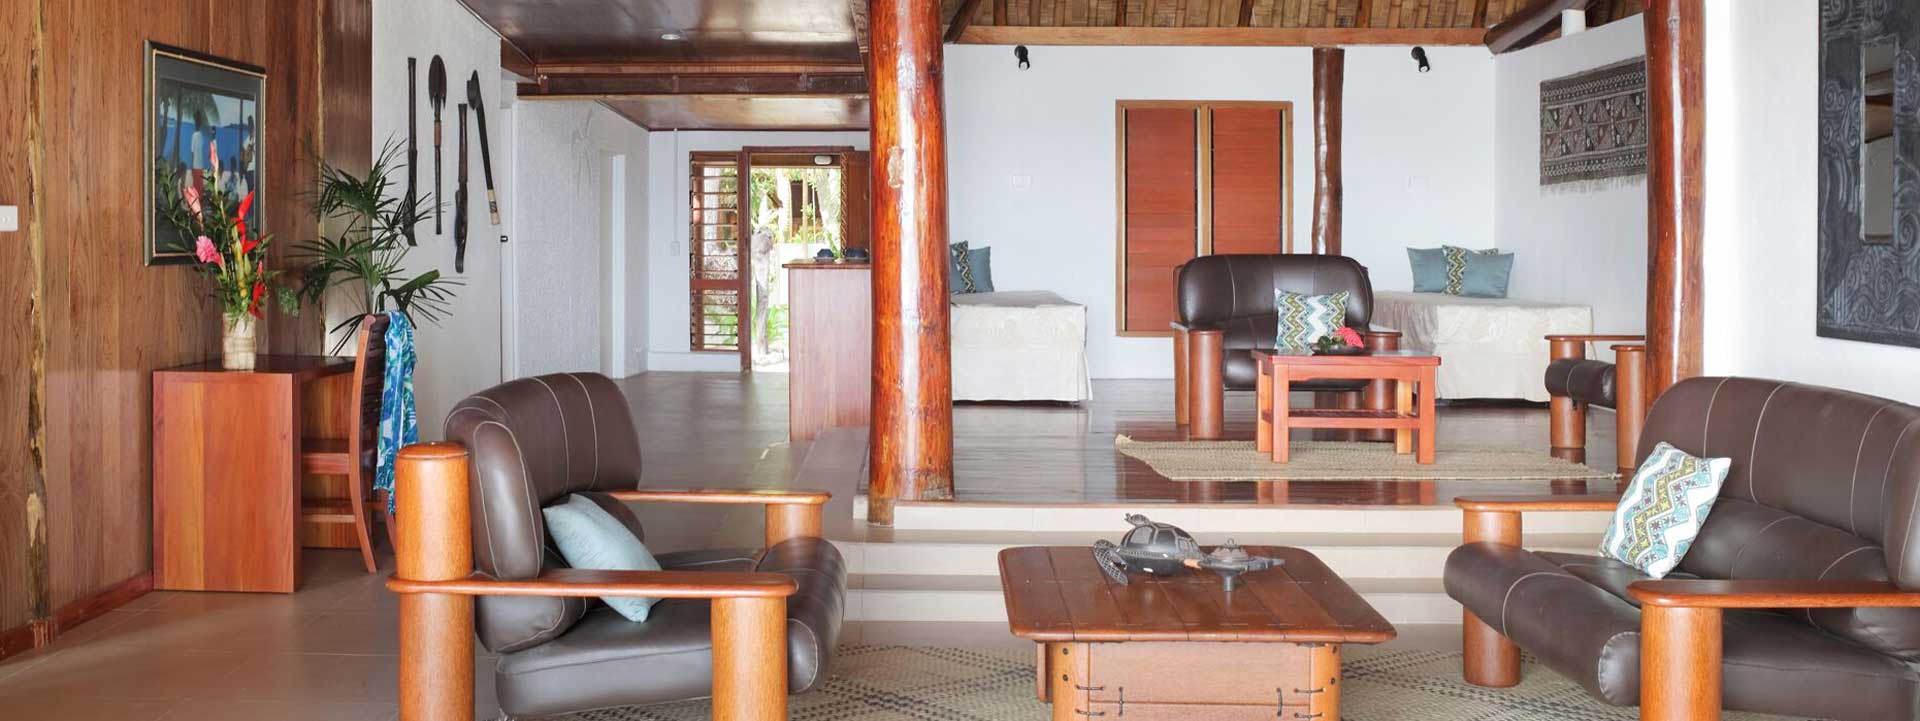 3bedroom villa in Fiji